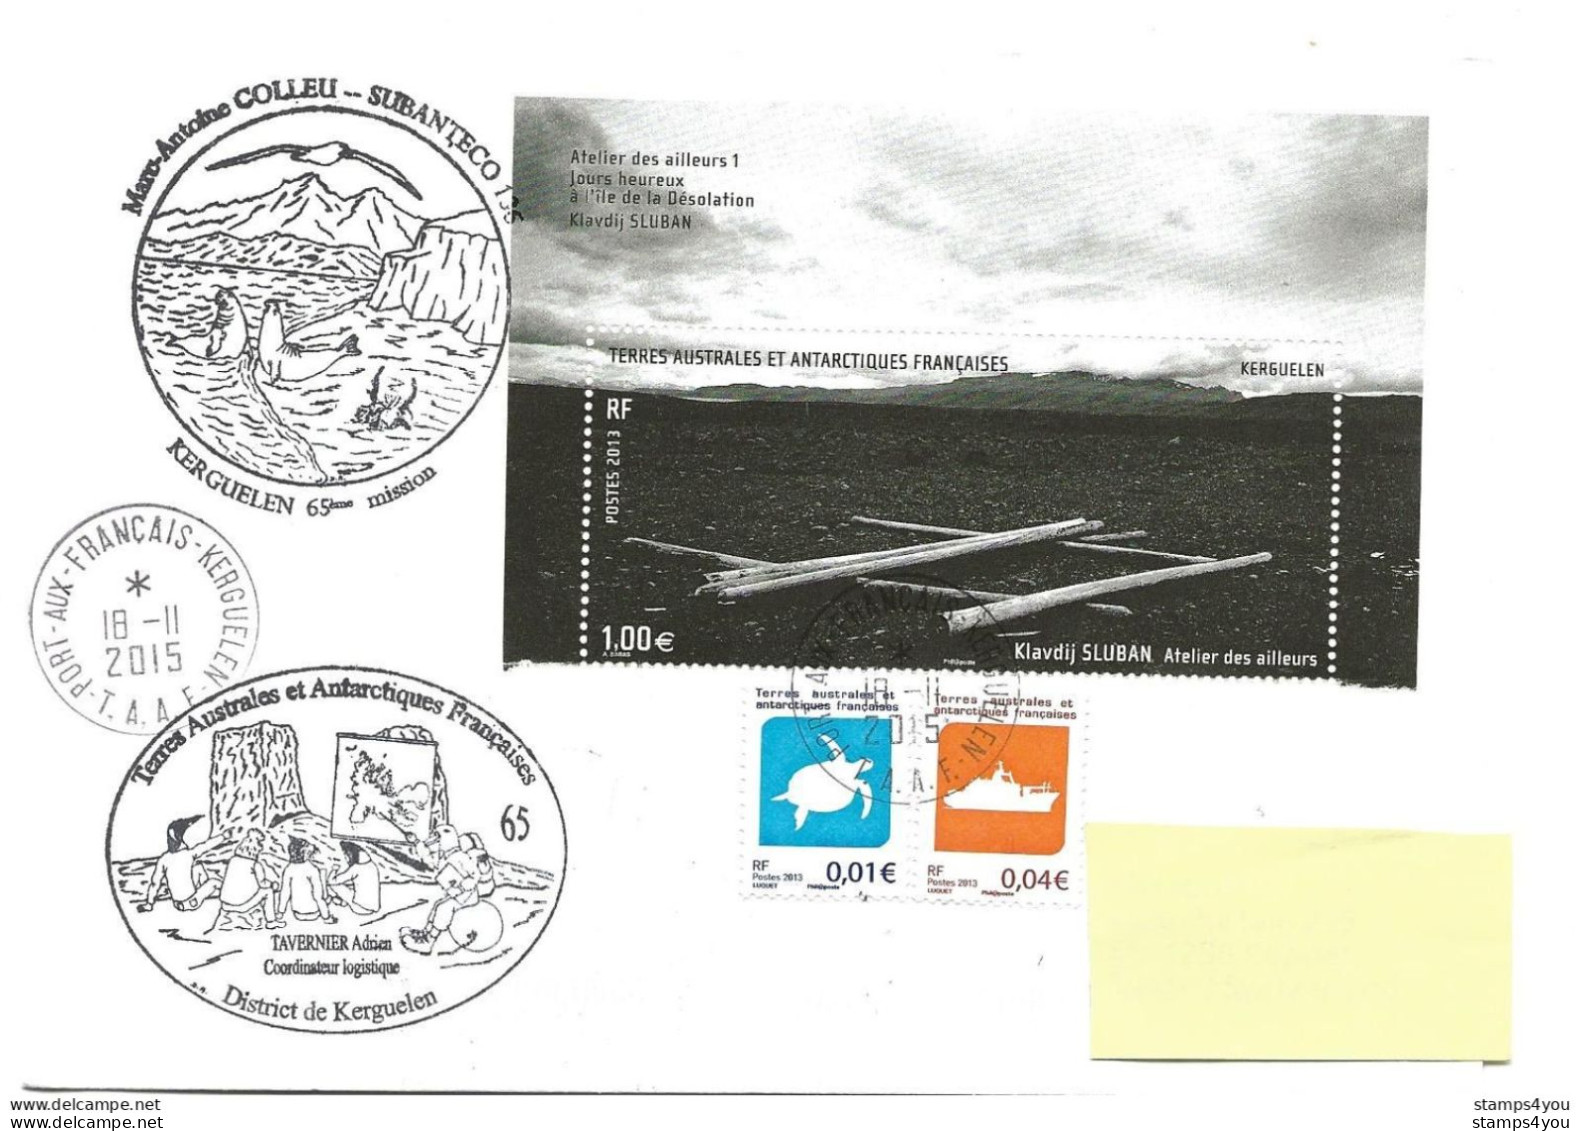 440 - 34 - Enveloppe TAAF Kerguelen - Cachets Illustrés Mission 65 - 2015 - Bases Antarctiques